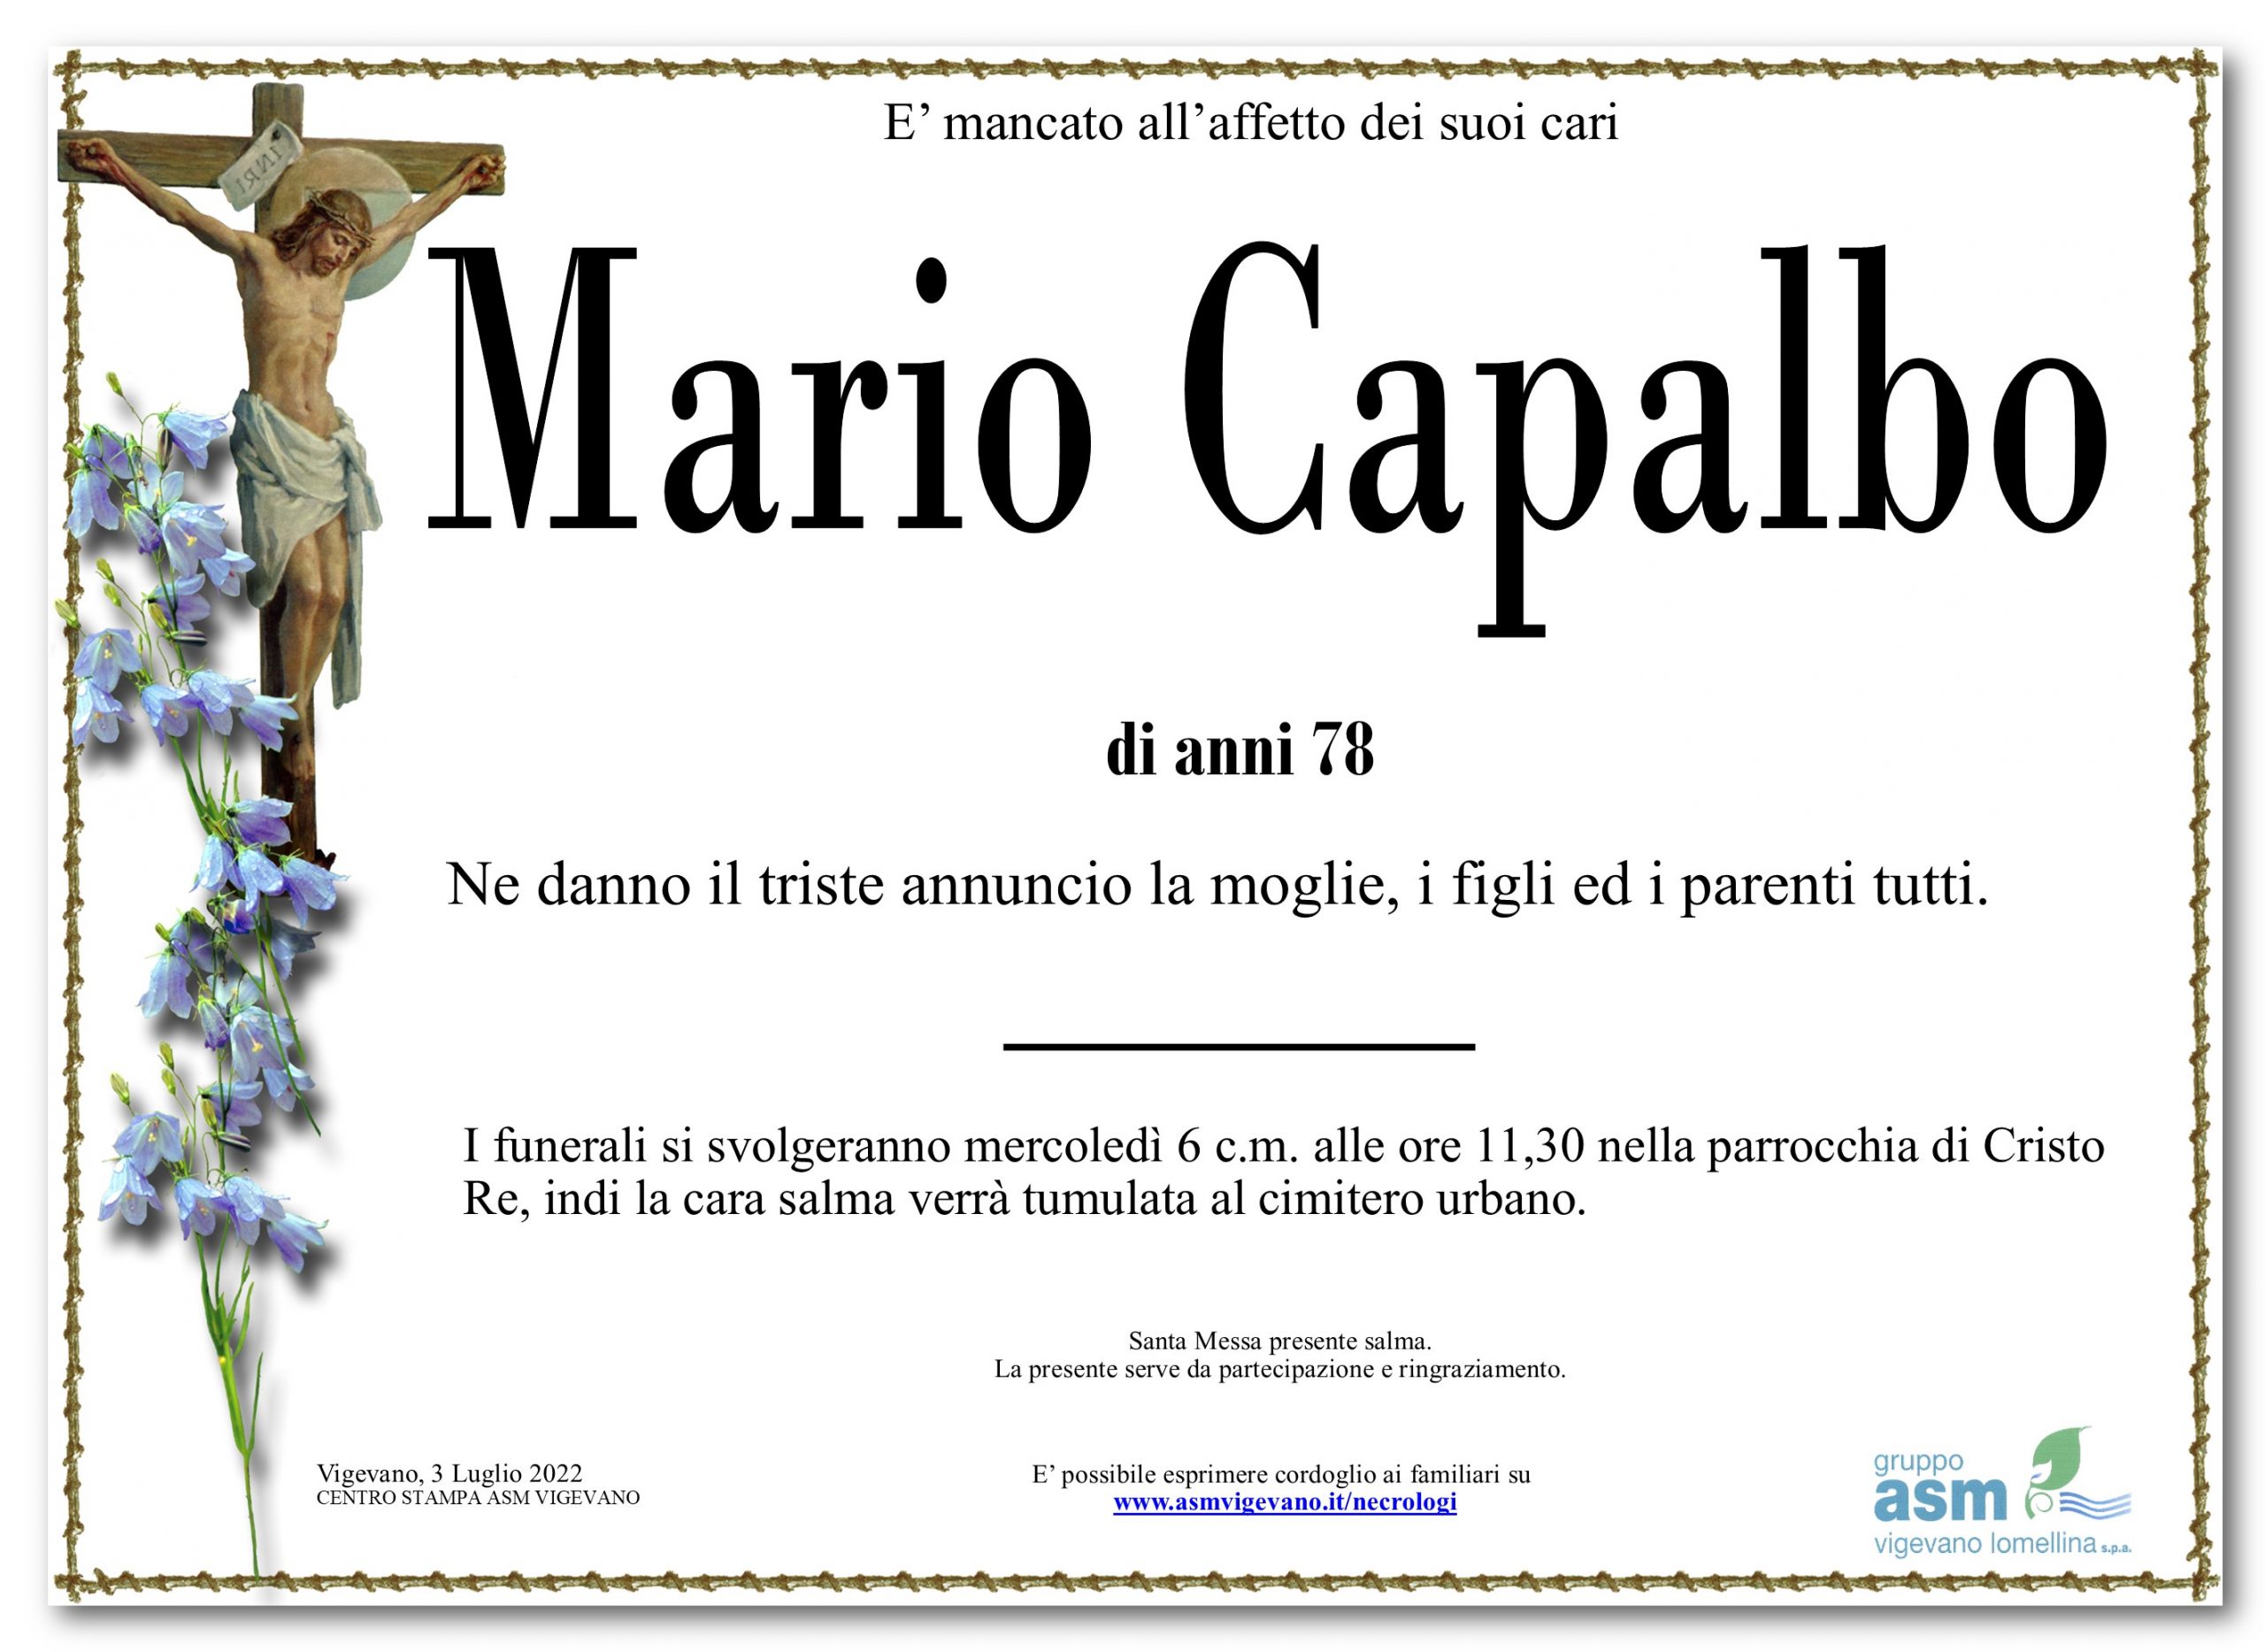 Mario Capalbo